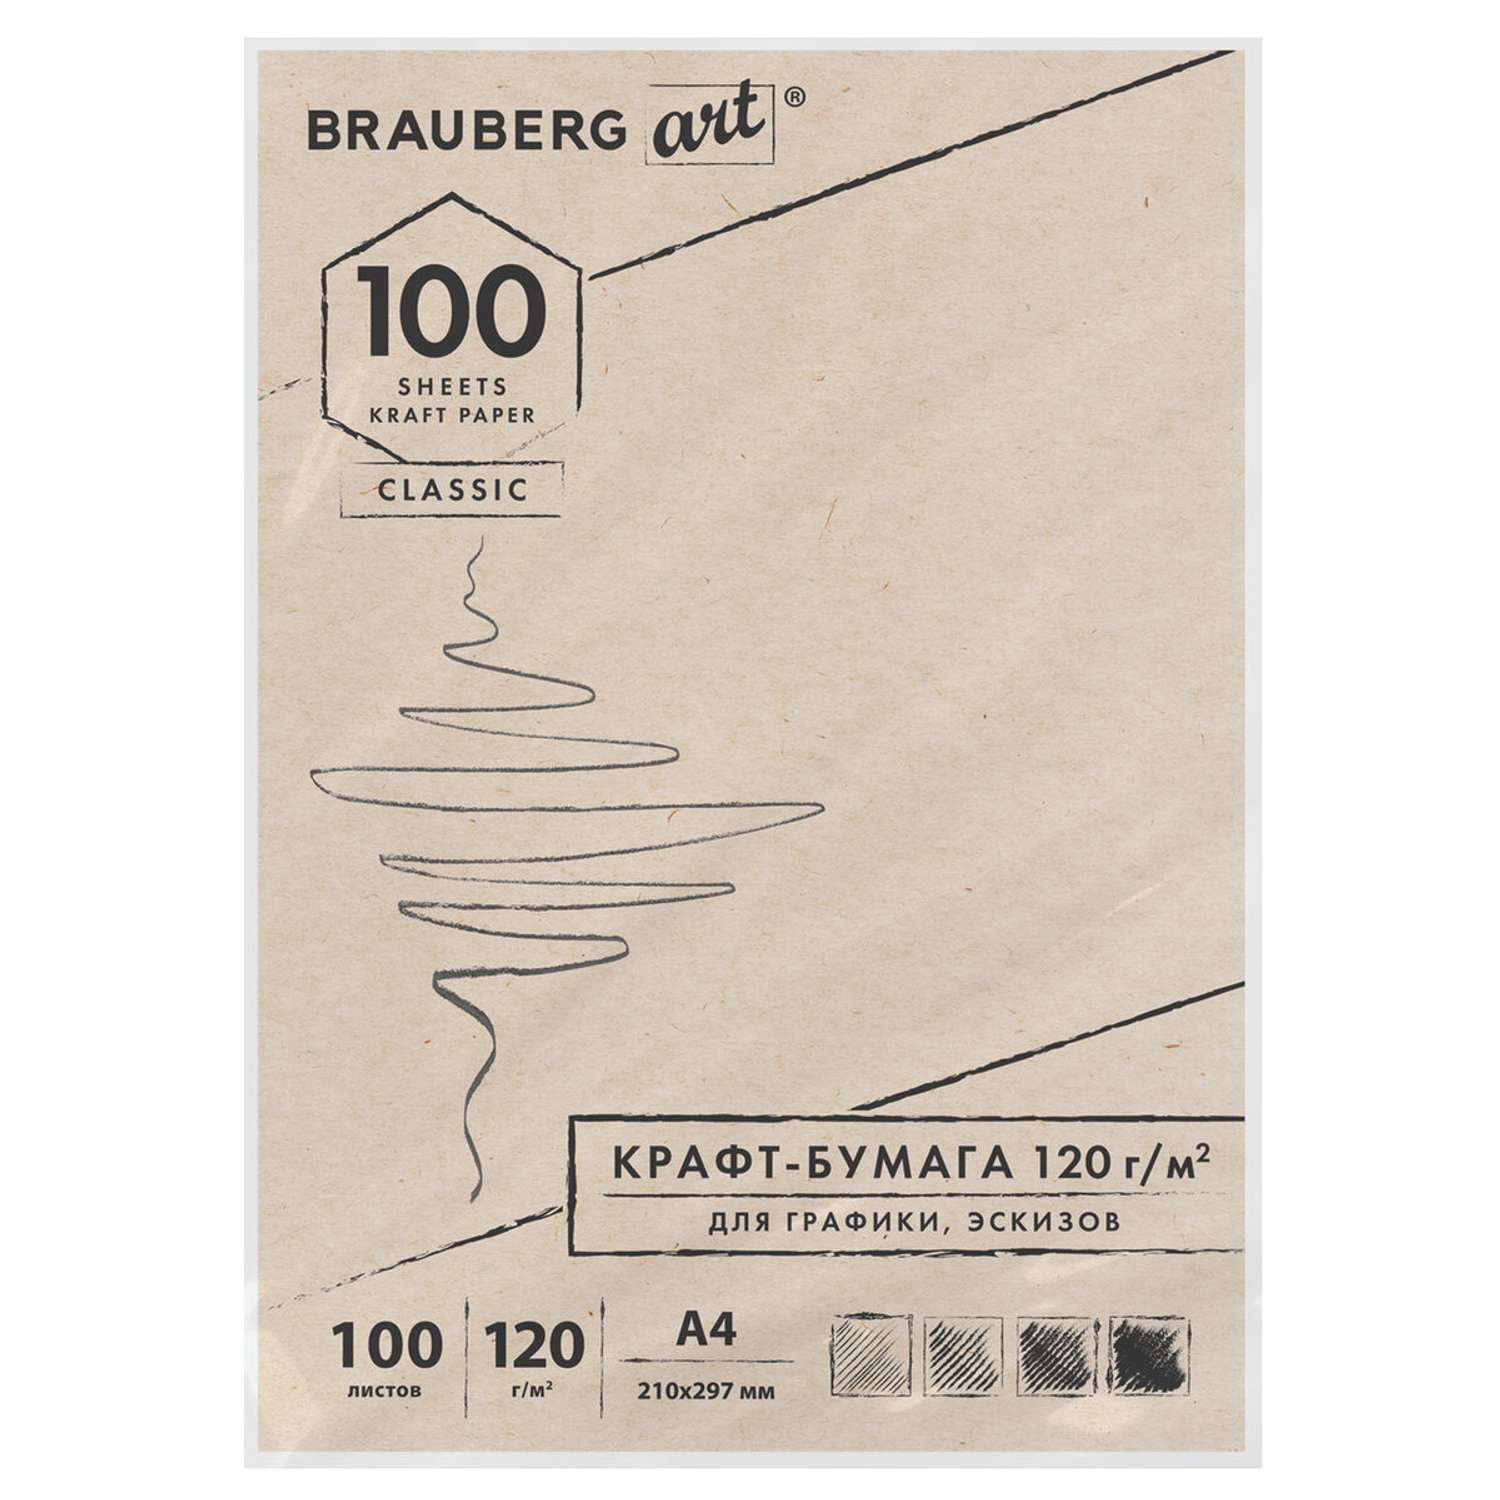 Крафт-бумага для графики Brauberg эскизов А4 100л Art Classic - фото 1